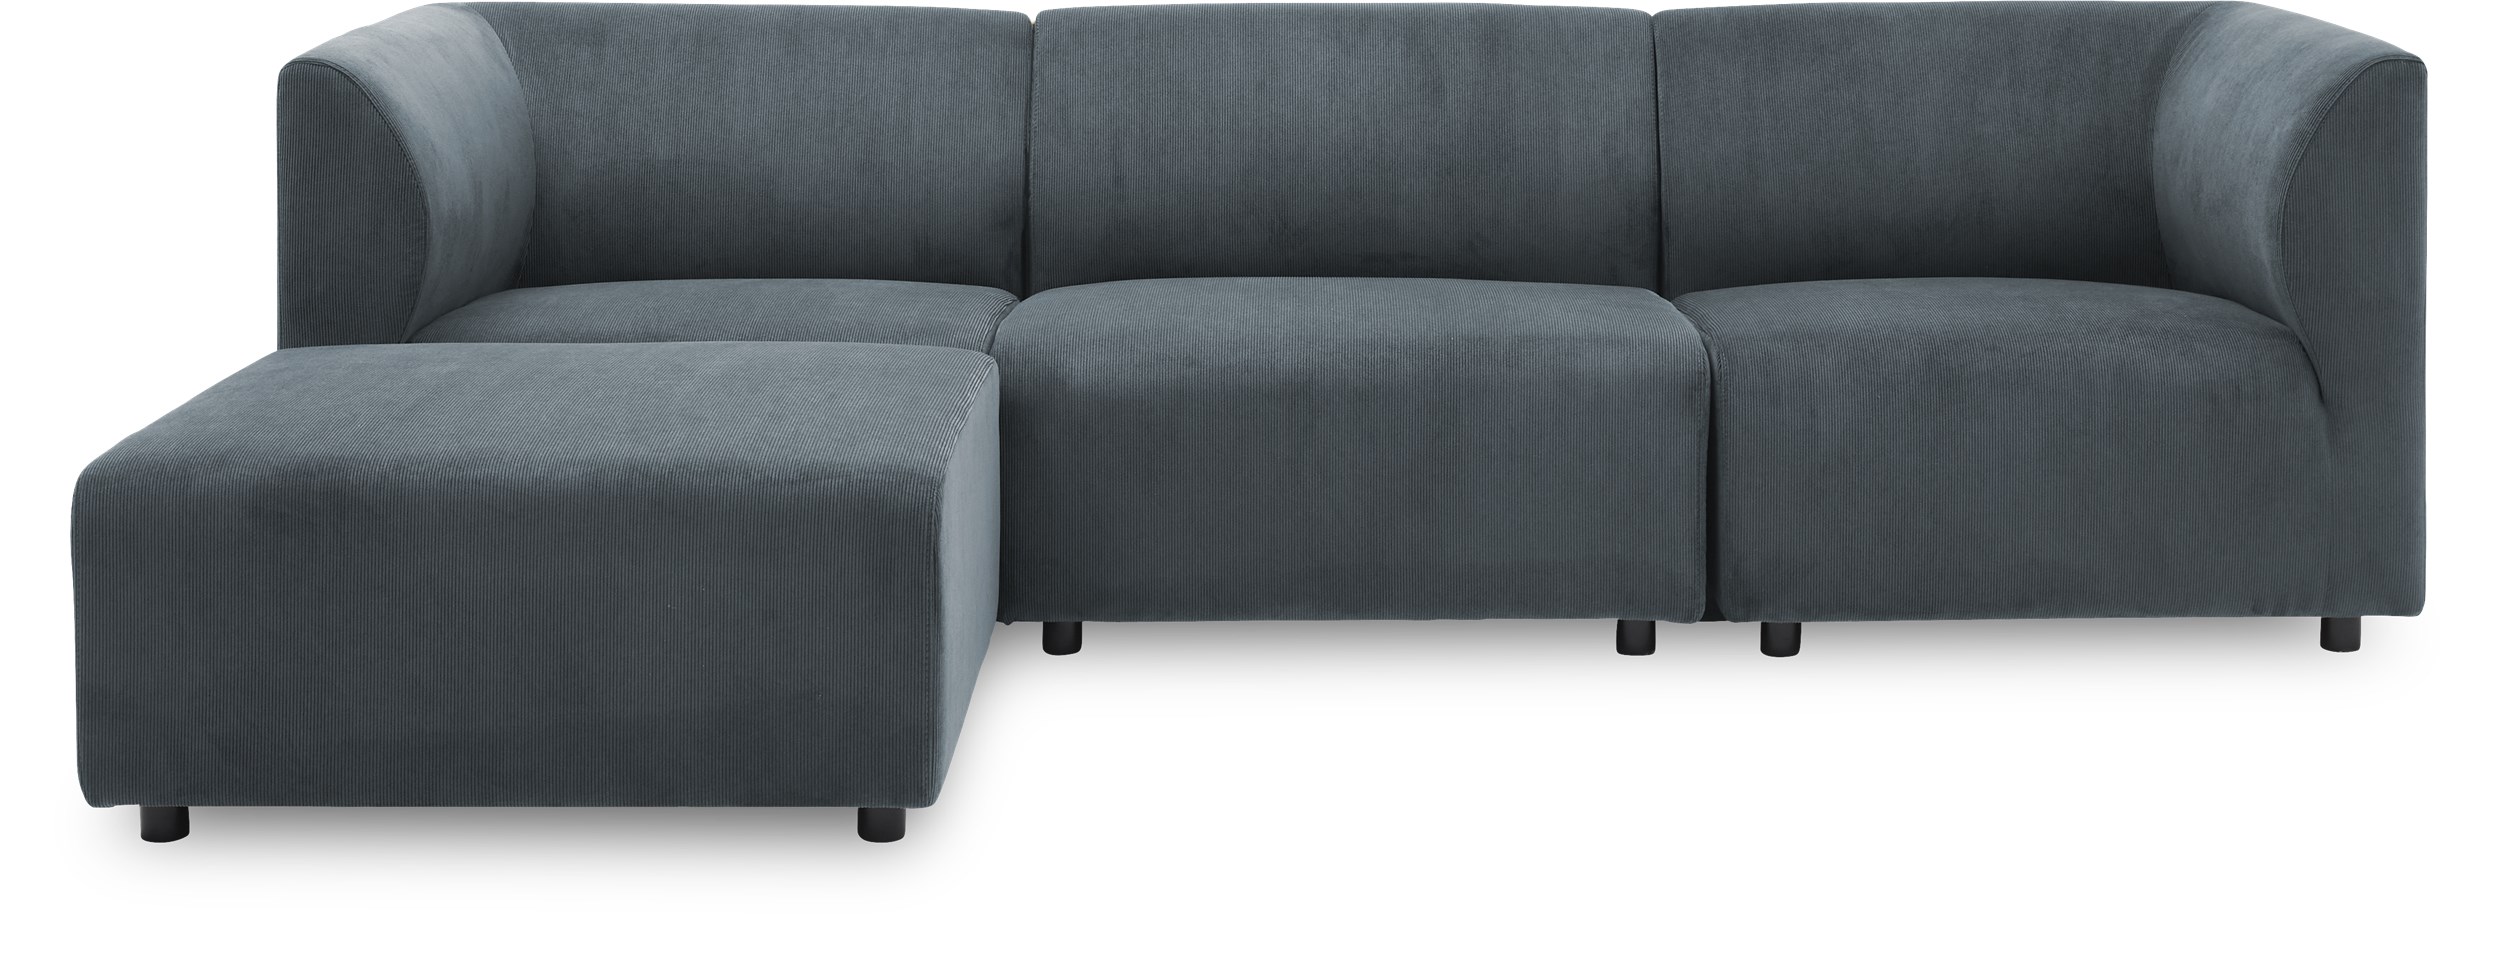 Divani 3 pers. inkl. puf Sofa - Wave 40 Slate grey stof og ben i sort plast